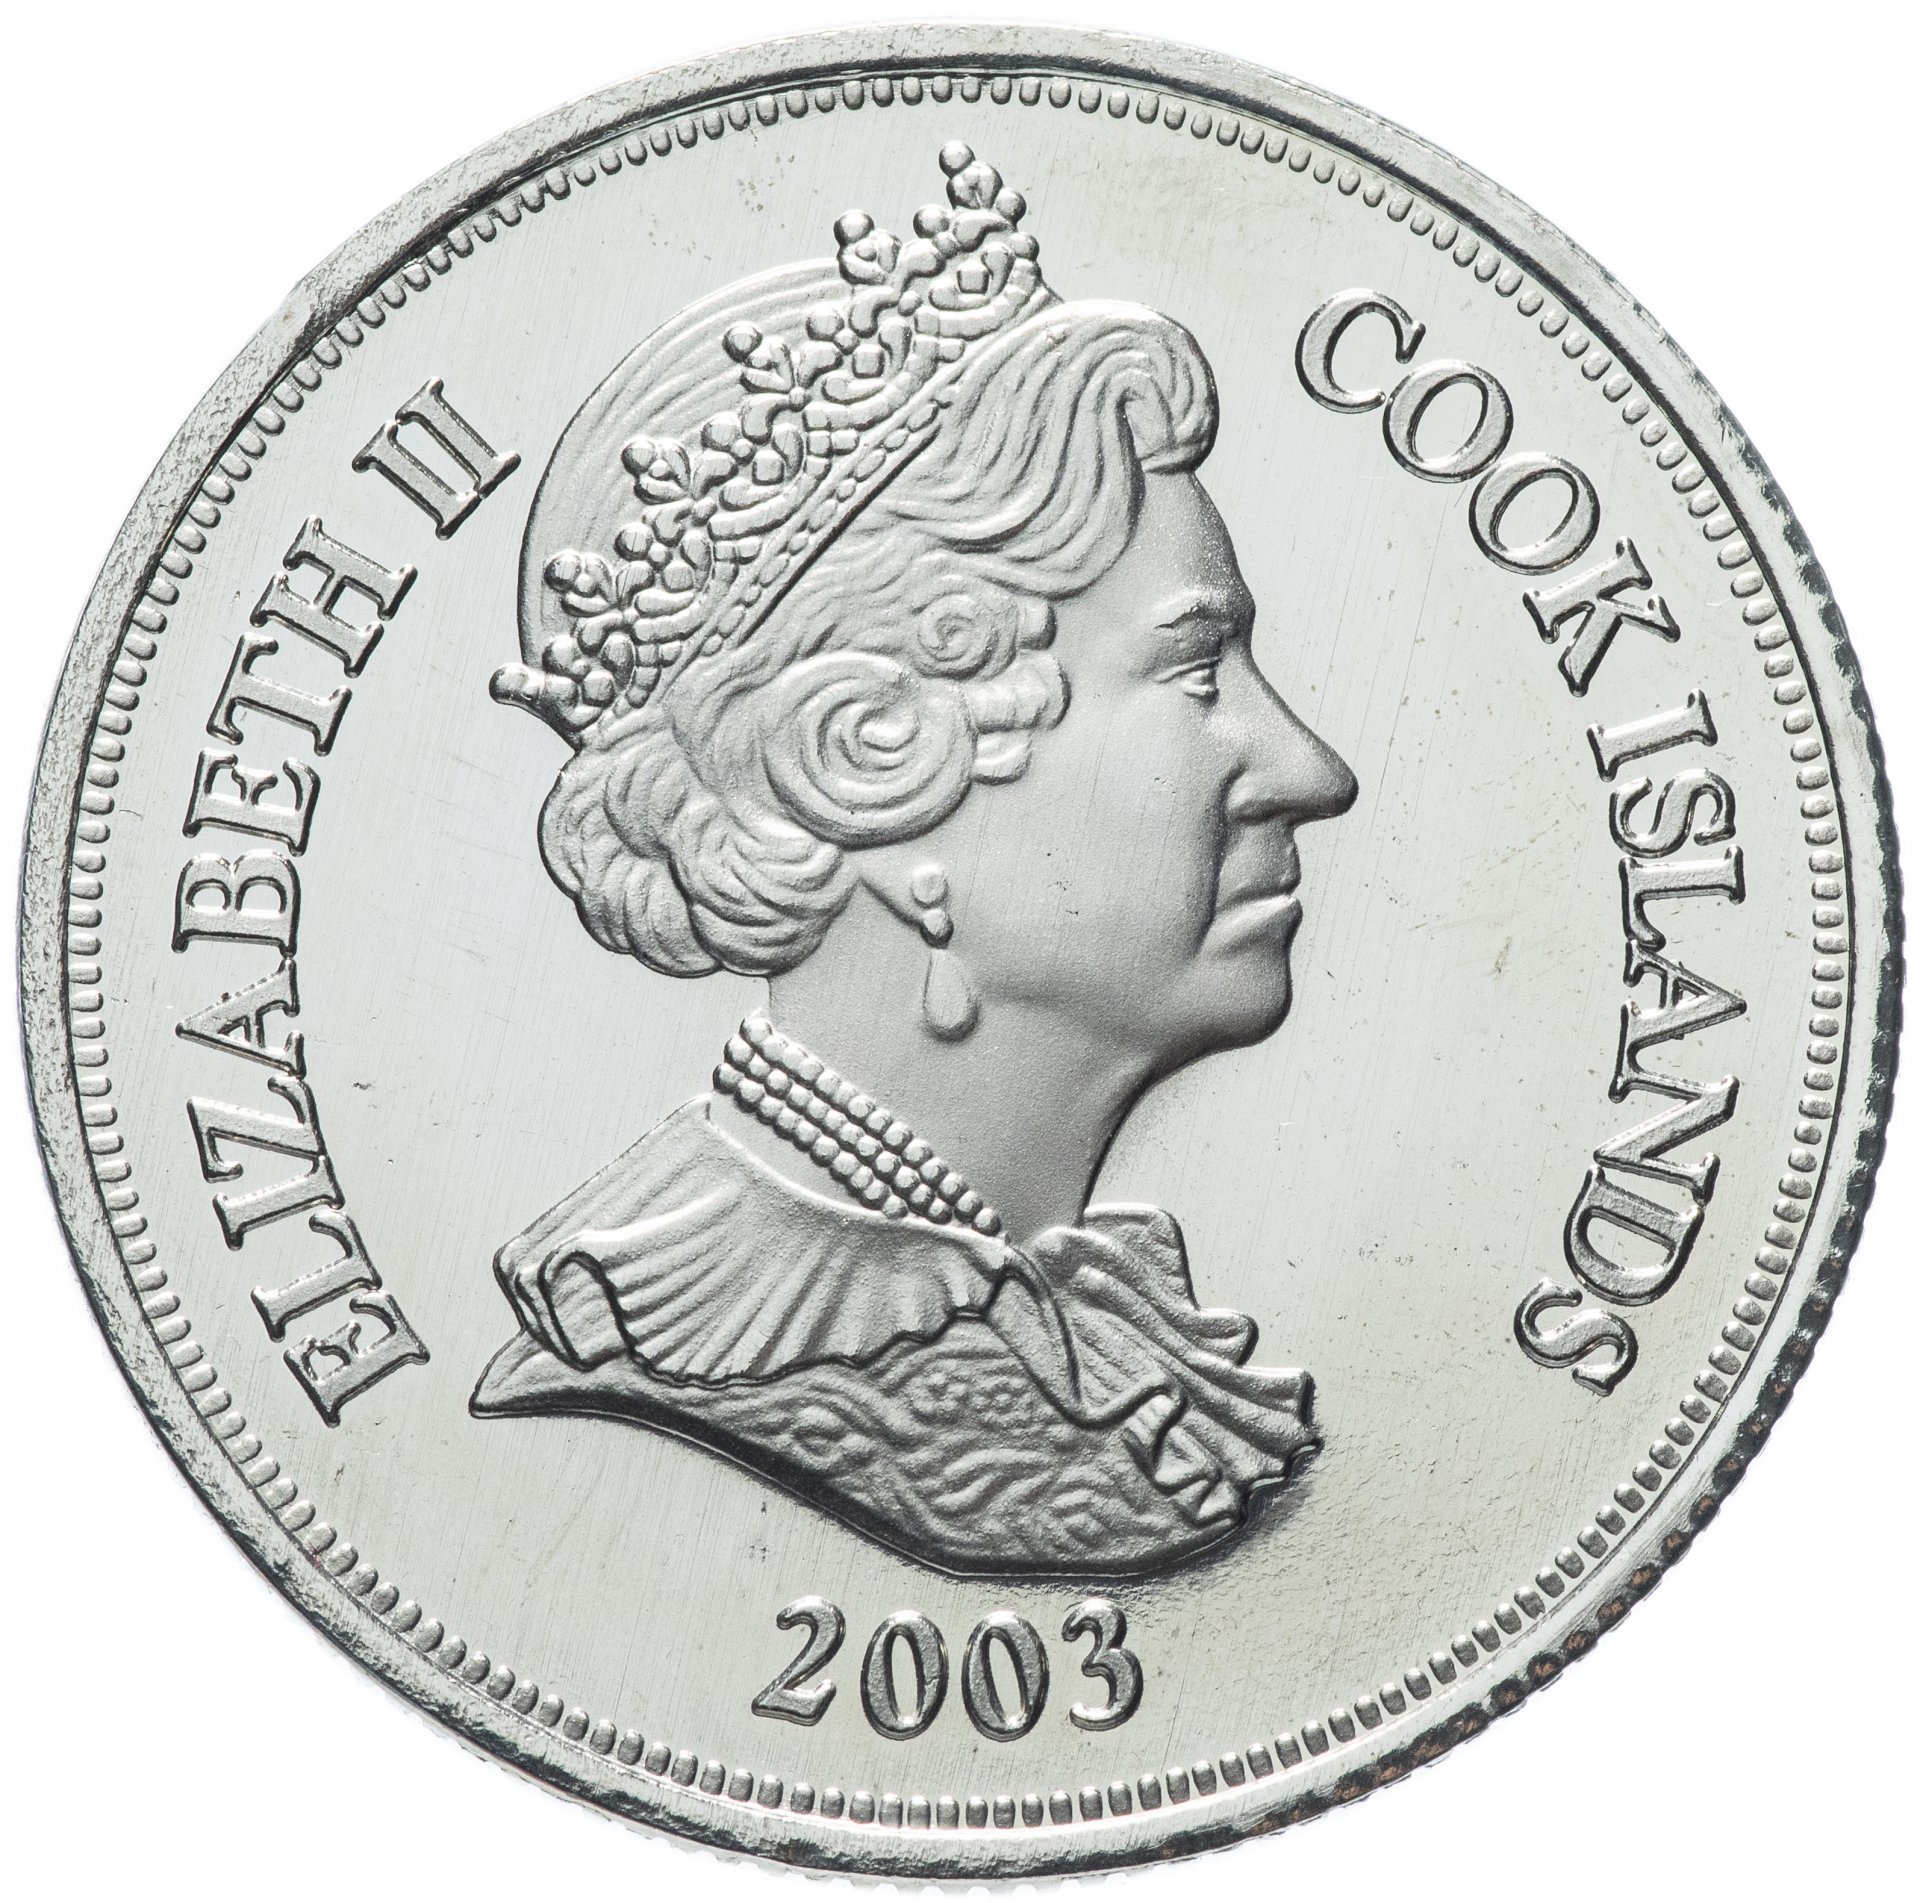 1 доллар кука. Тристан-да-Кунья 1 крона 2006. 1 Доллар острова Кука. Монеты острова Кука 1 доллар, 2003-10. 1 Крона 2006 Тристан да Кунья серебро.